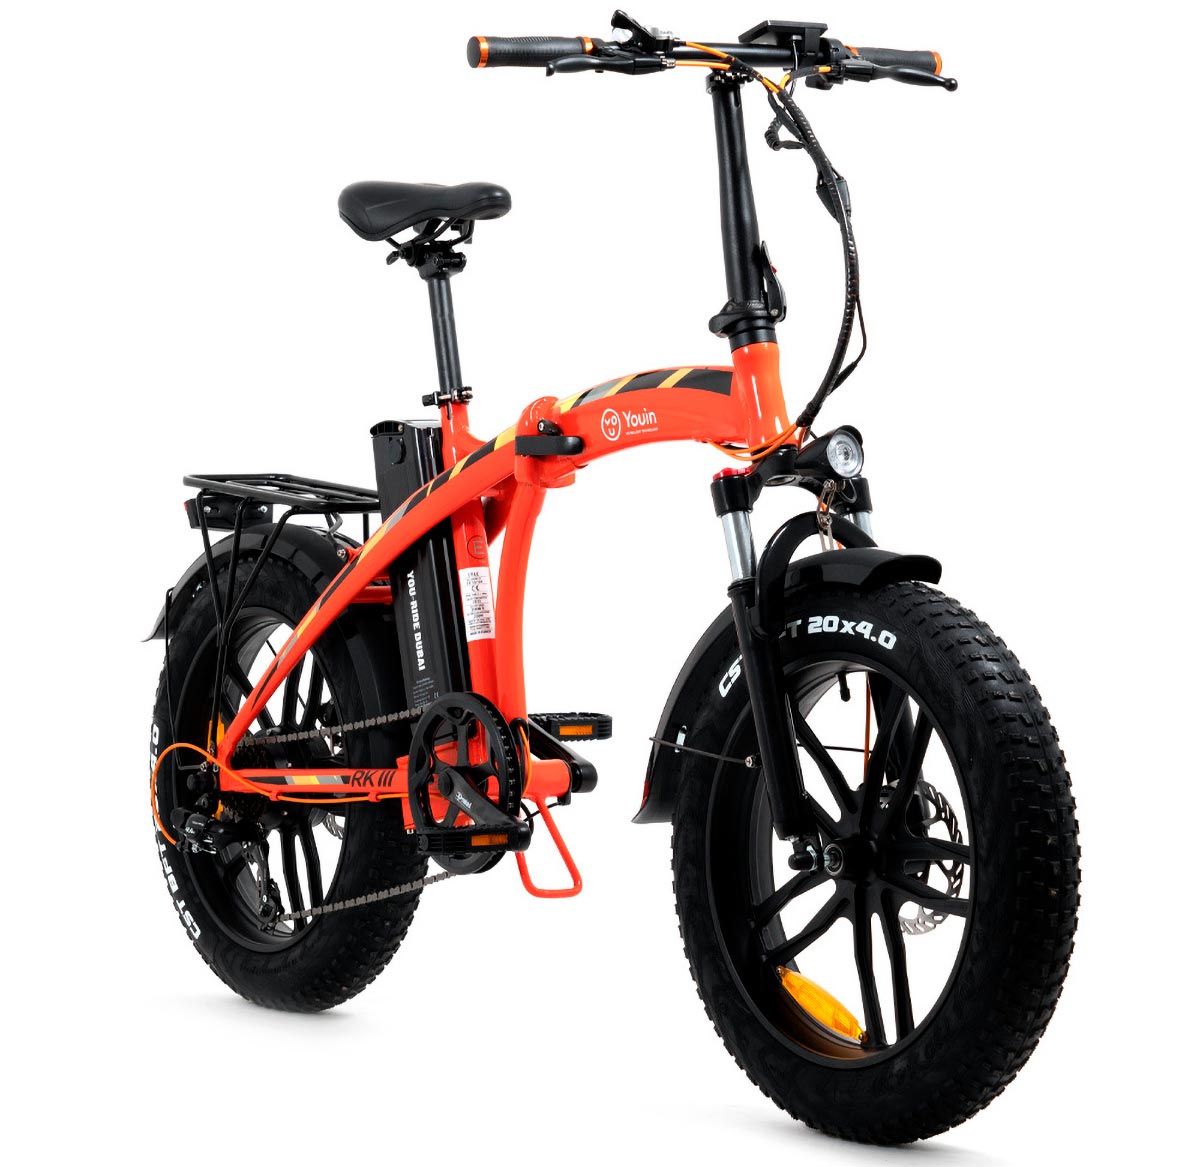 Youin You-Ride Dubai, una bici eléctrica plegable de ruedas gordas para salir del asfalto